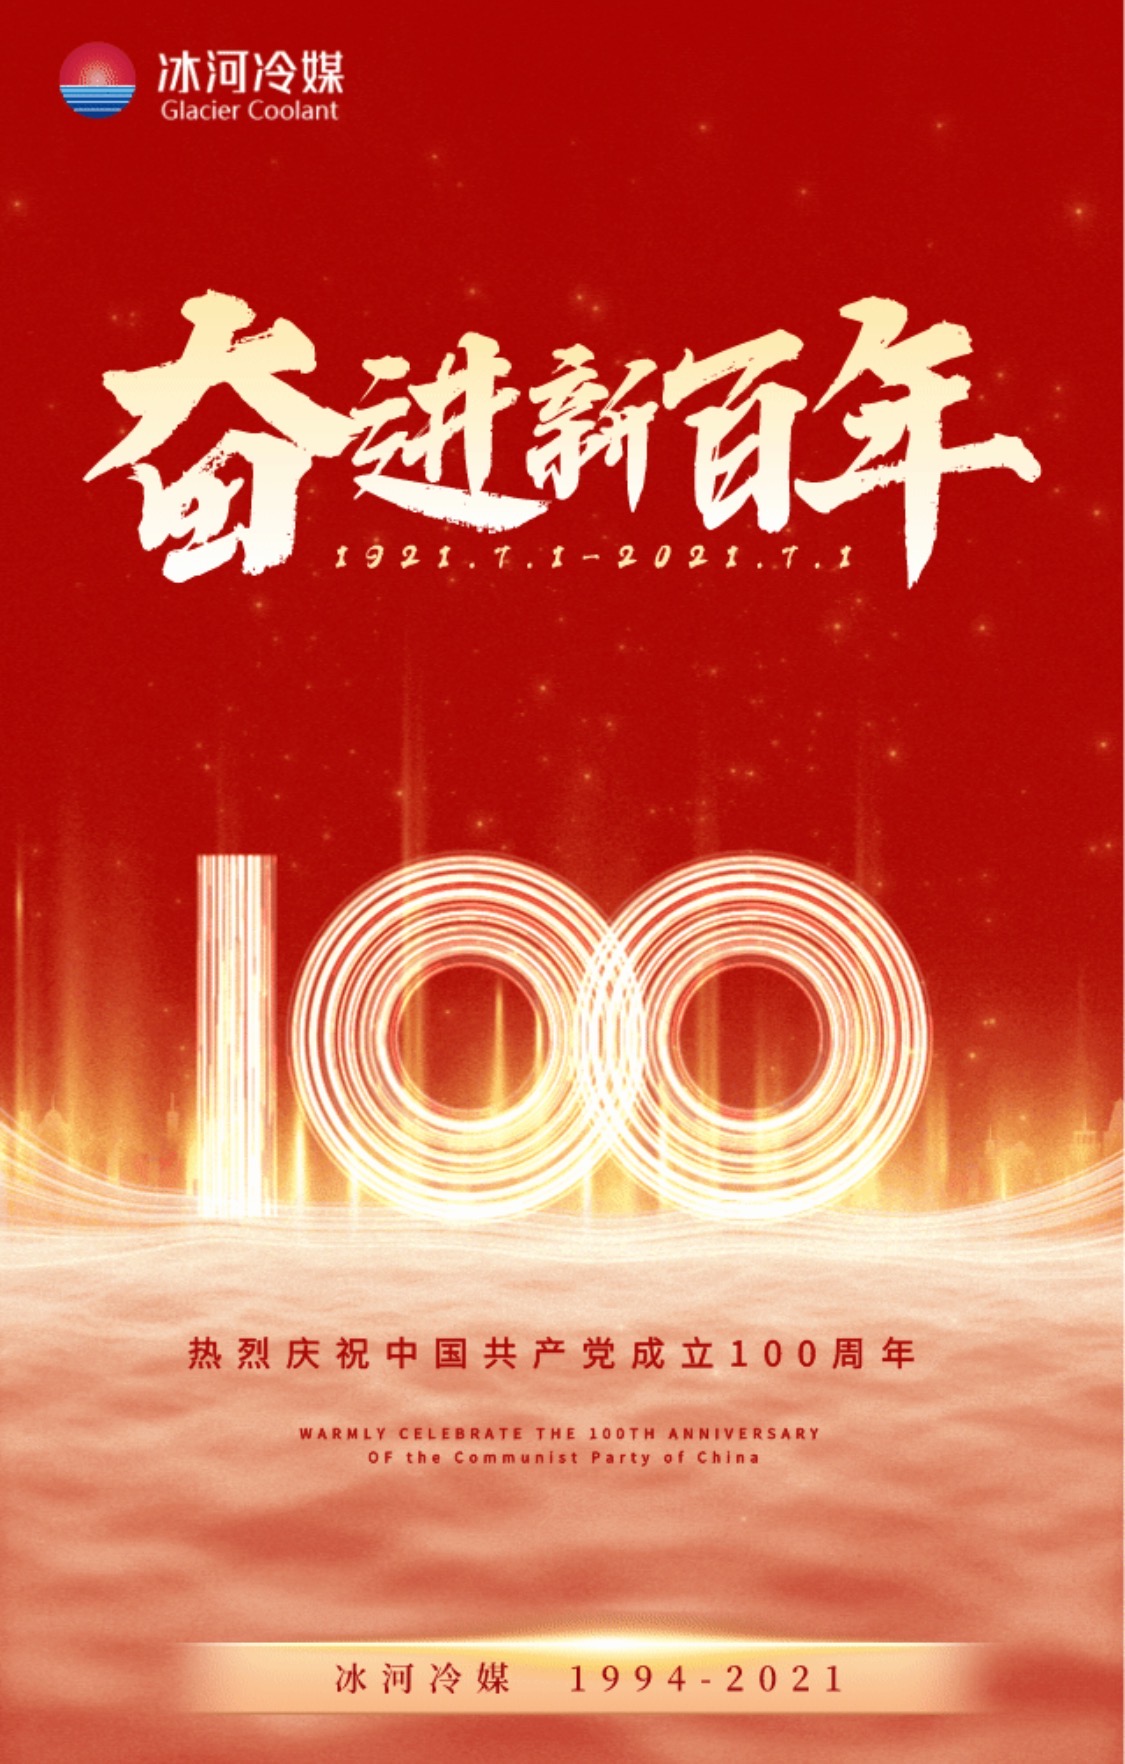 冰河冷媒热烈庆祝中国共产党成立100周年